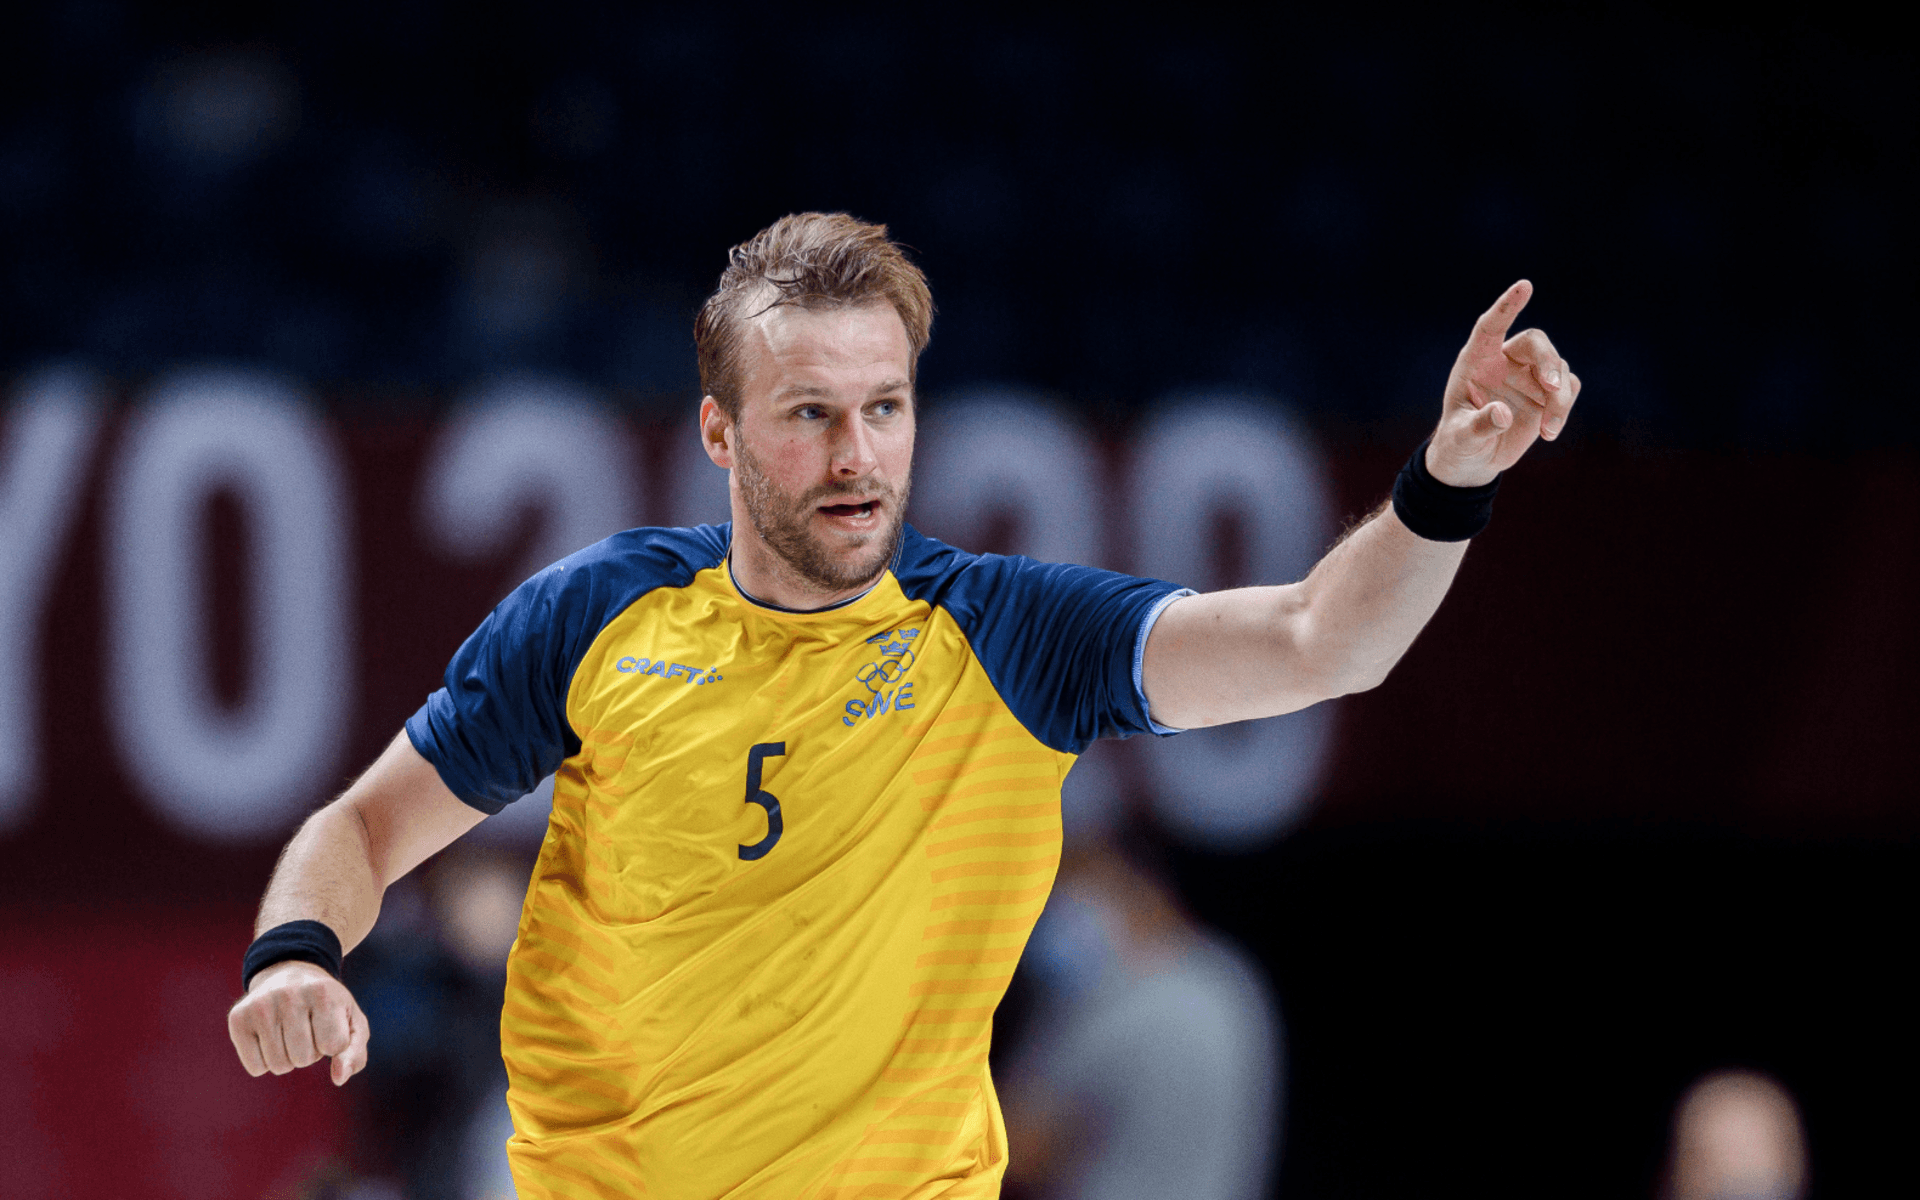 Den SHK-fostrade mittsexan Max Darj signalerar för mål i Sveriges match mot Spanien i OS i Tokyo. Sverige nådde kvartsfinal i OS och tog silver i VM i handboll efter finalförlust mot Danmark.aLundberg